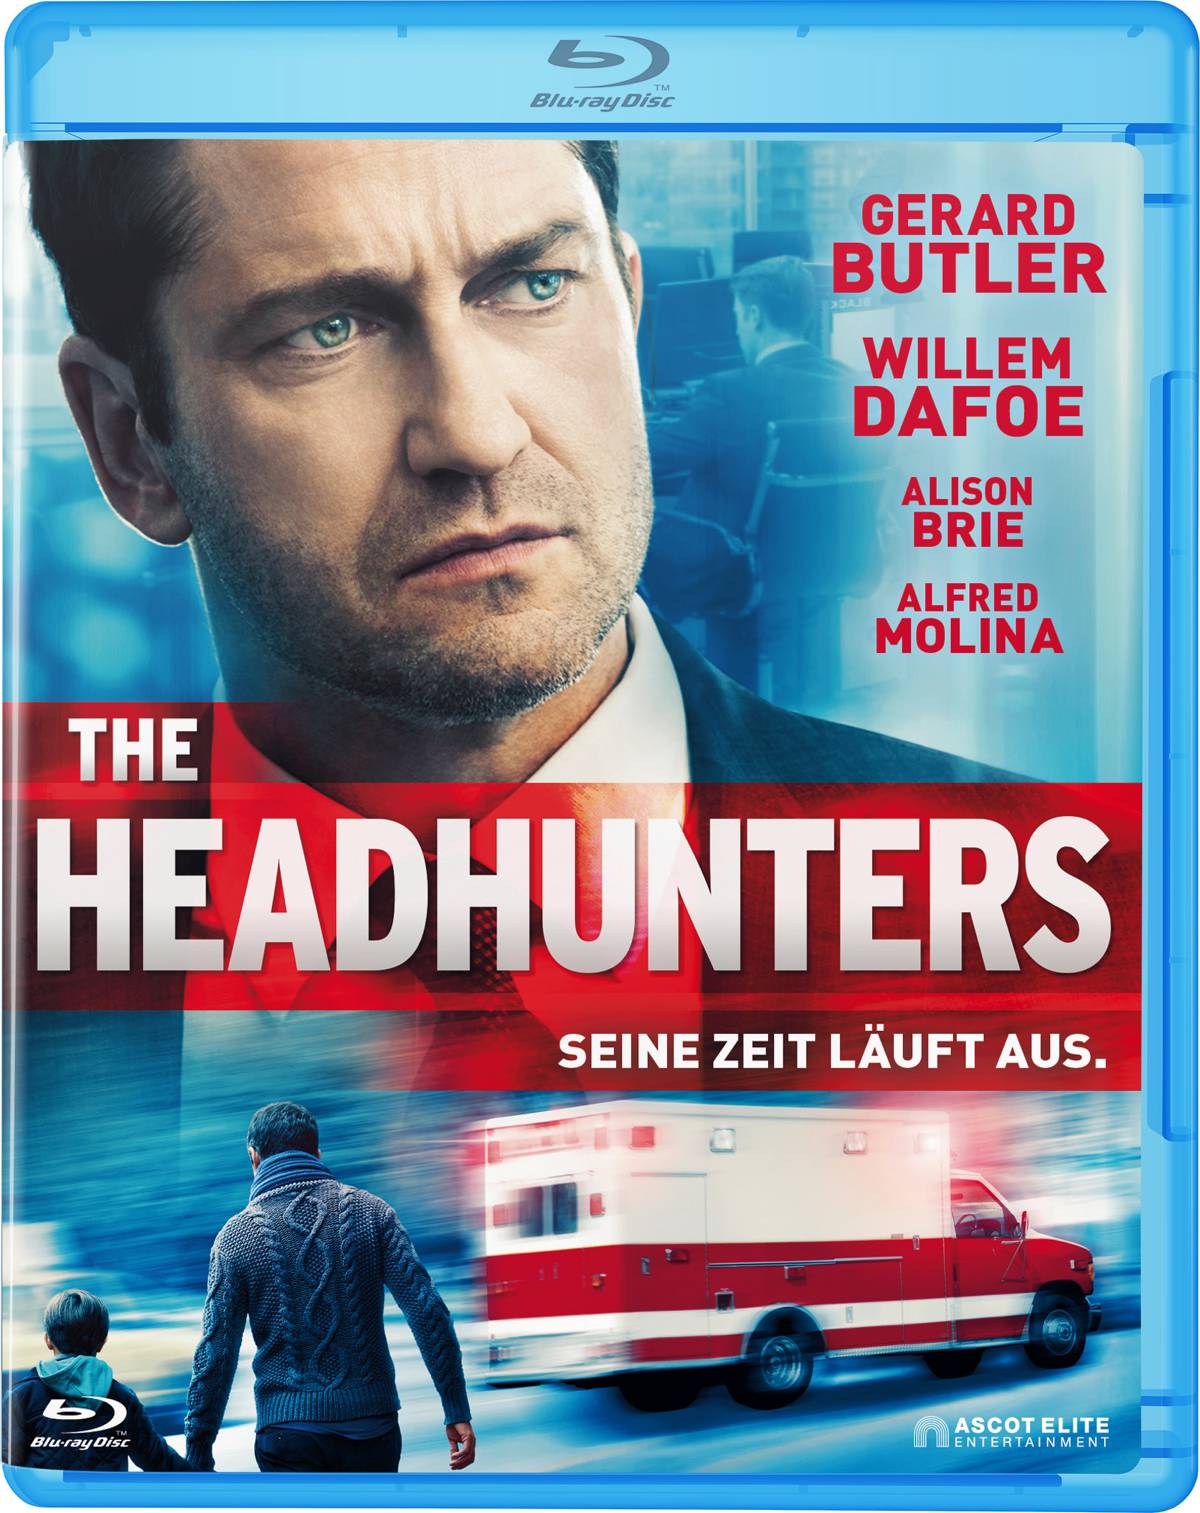 The Headhunters – Seine Zeit läuft aus